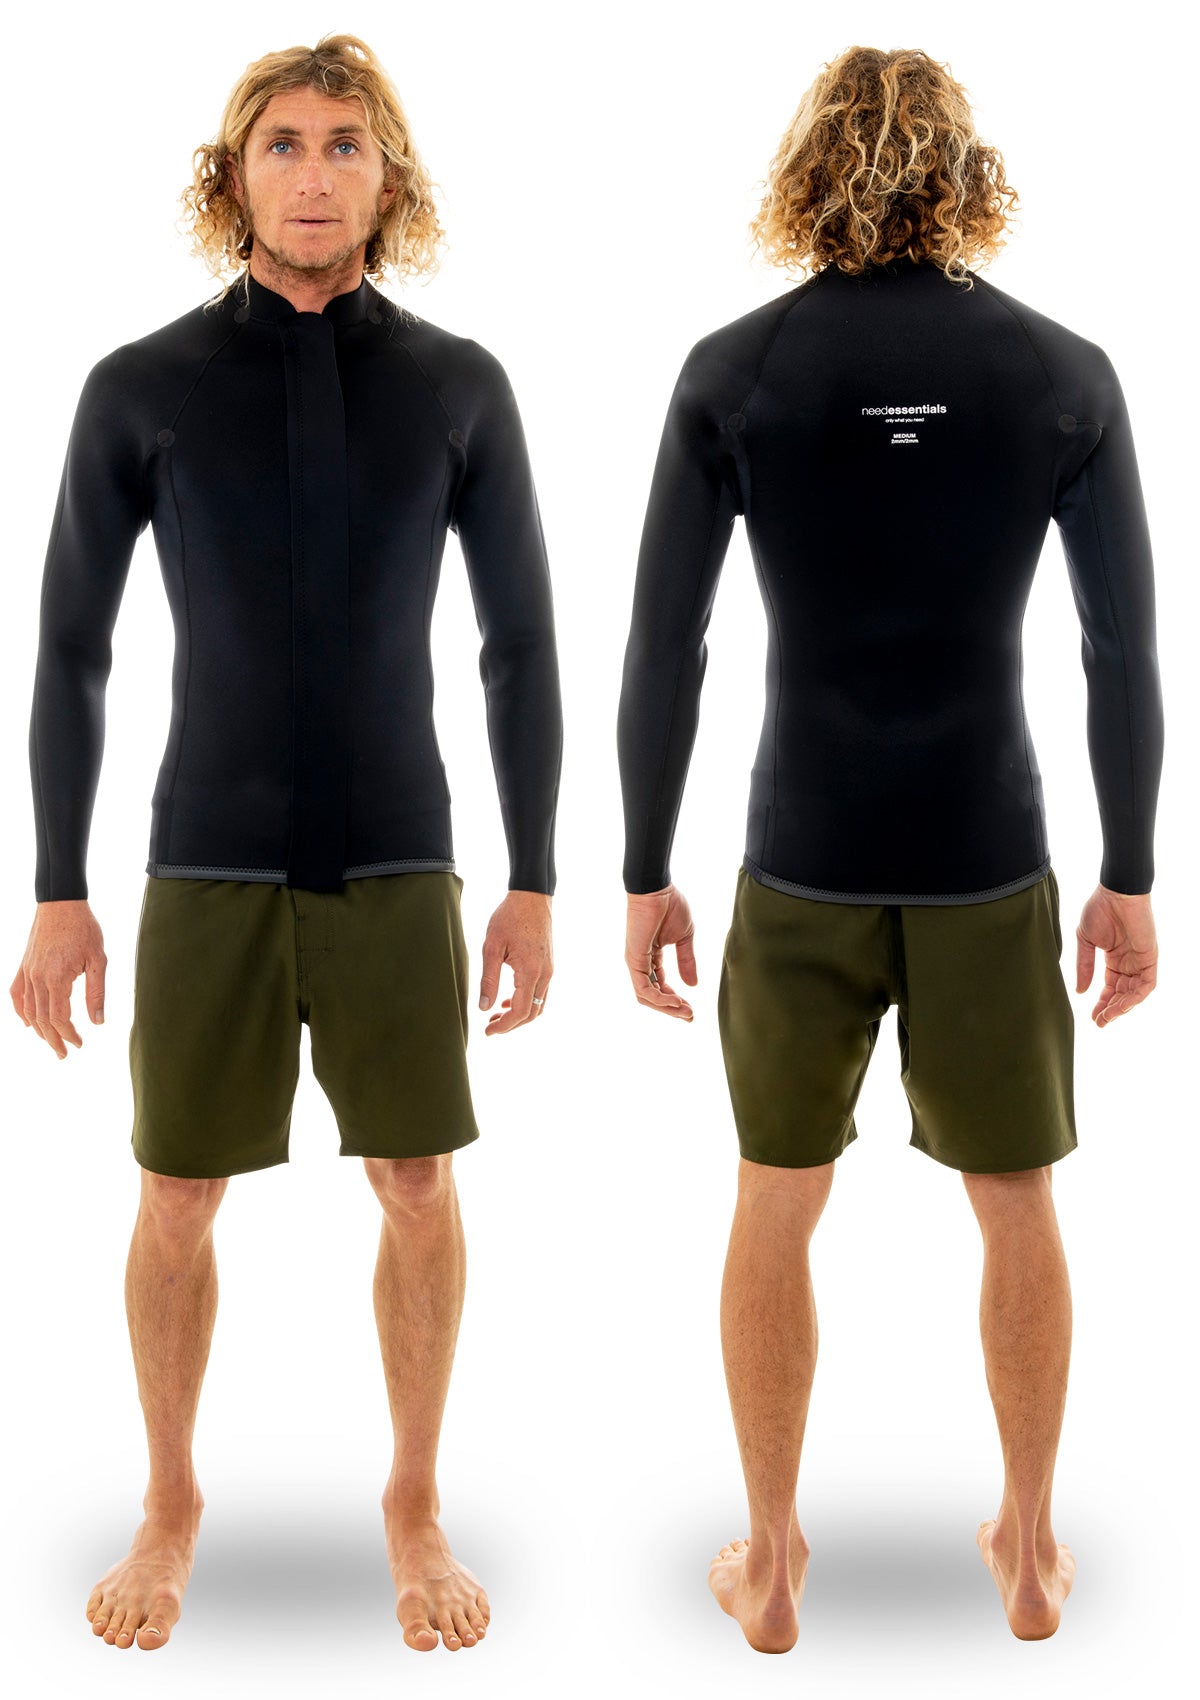 needessentials 2mm Smoothy Front Zip Jacket summer wetsuit